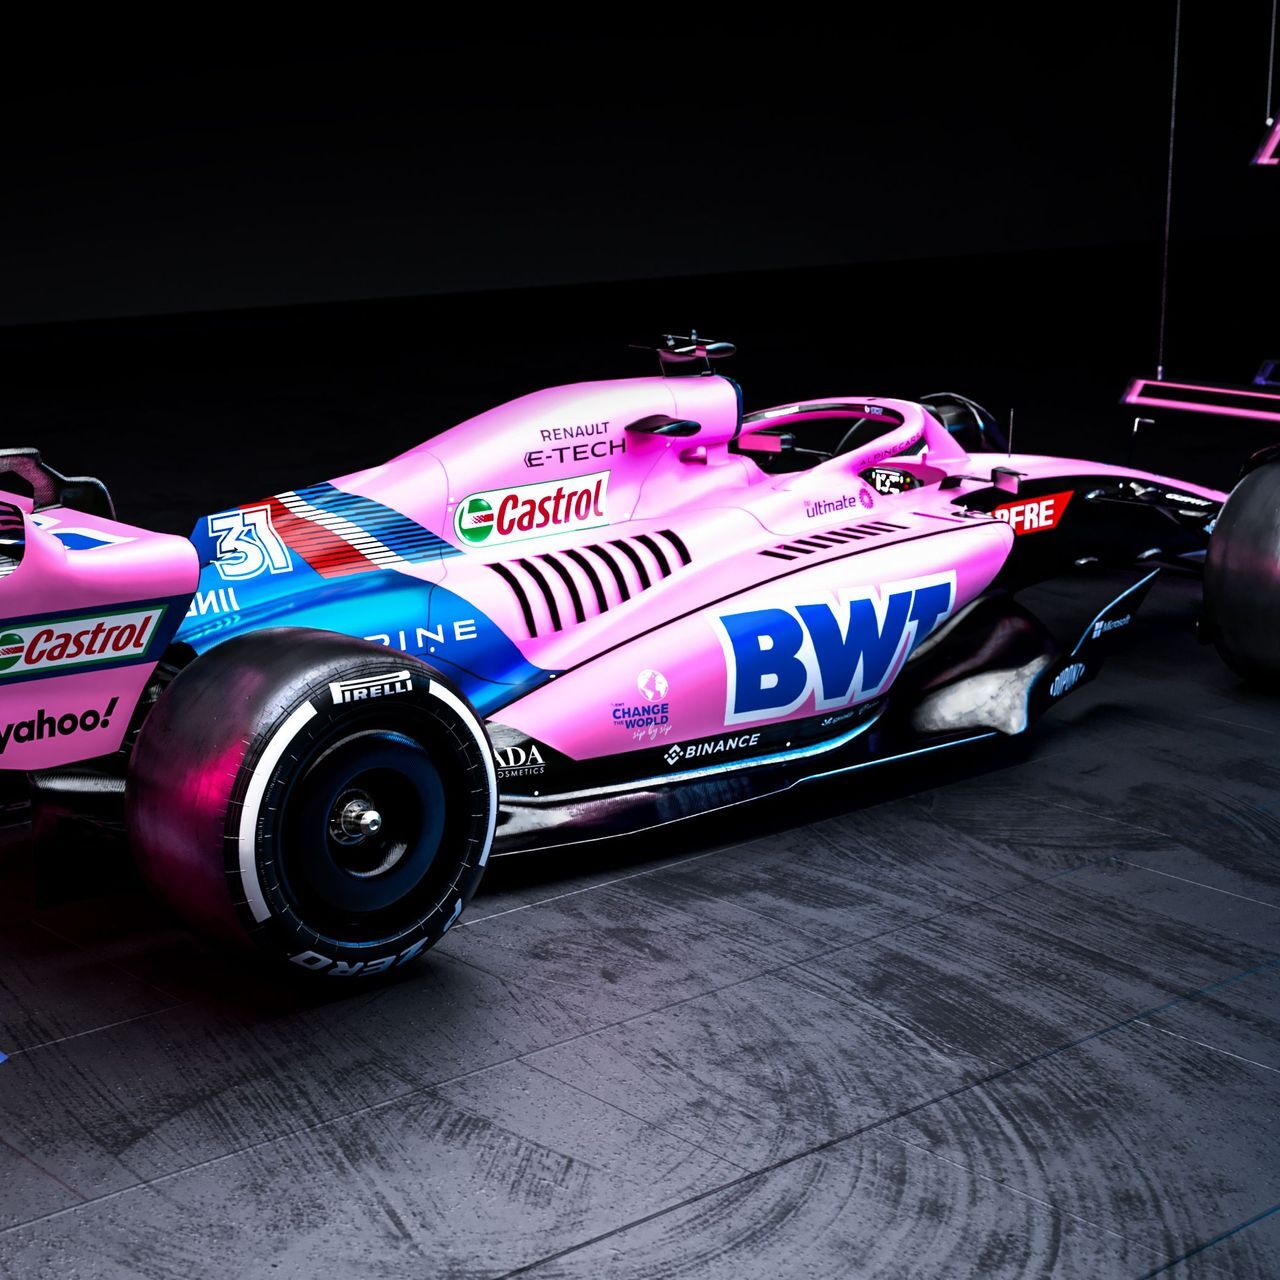 La monoposto del BWT Alpine F1 Team inizierà la stagione 2022 di Formula 1 con una livrea rosa